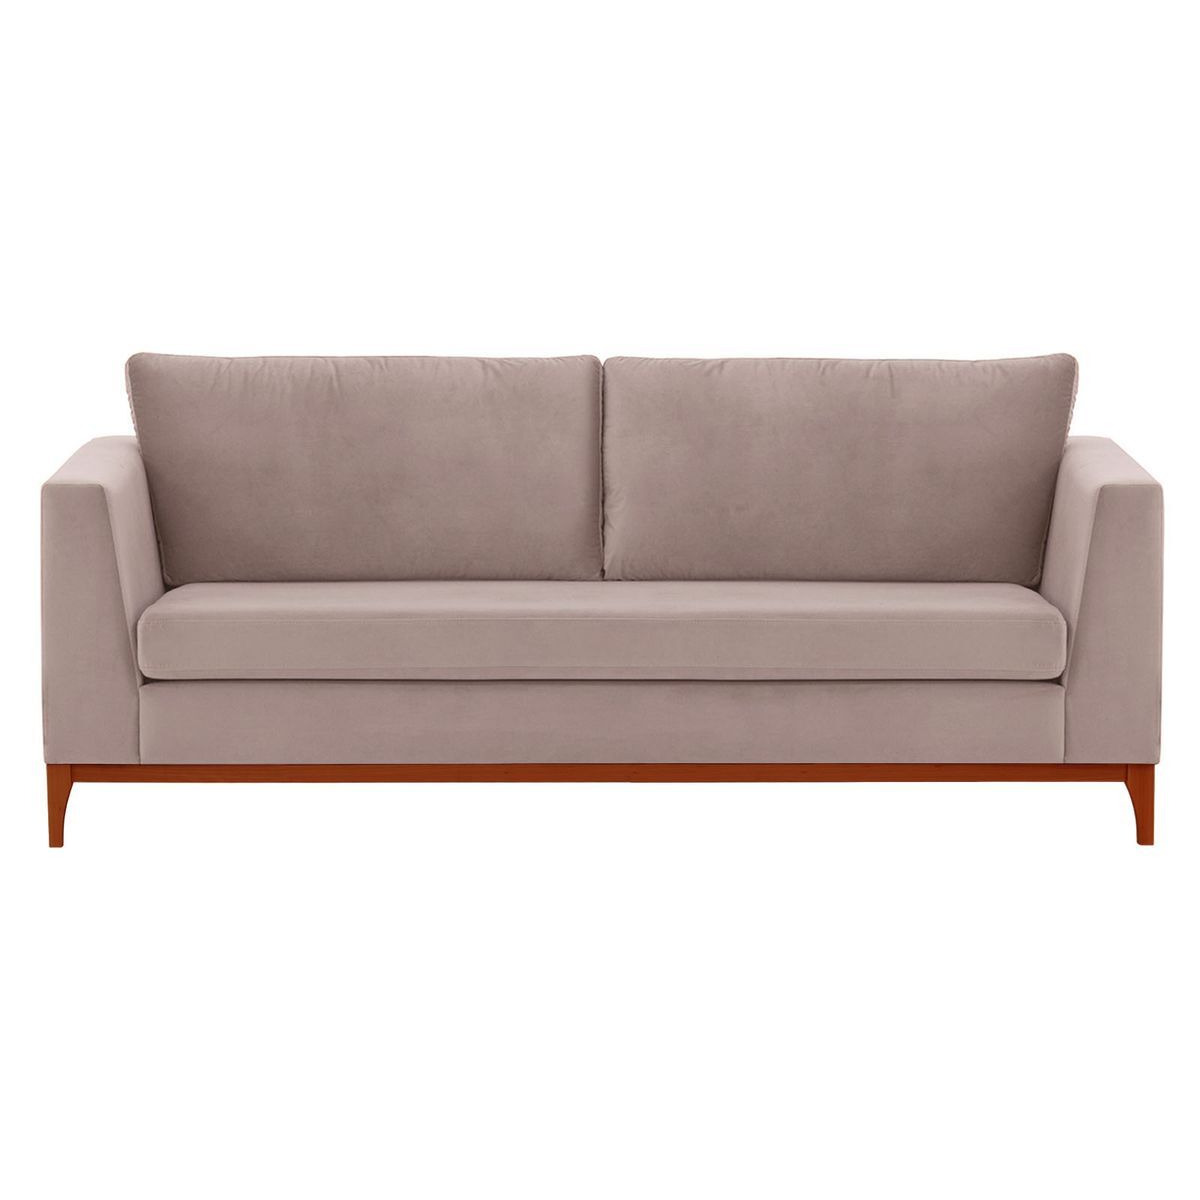 Gosena Wood 3 Seater Sofa, lilac, Leg colour: aveo - image 1